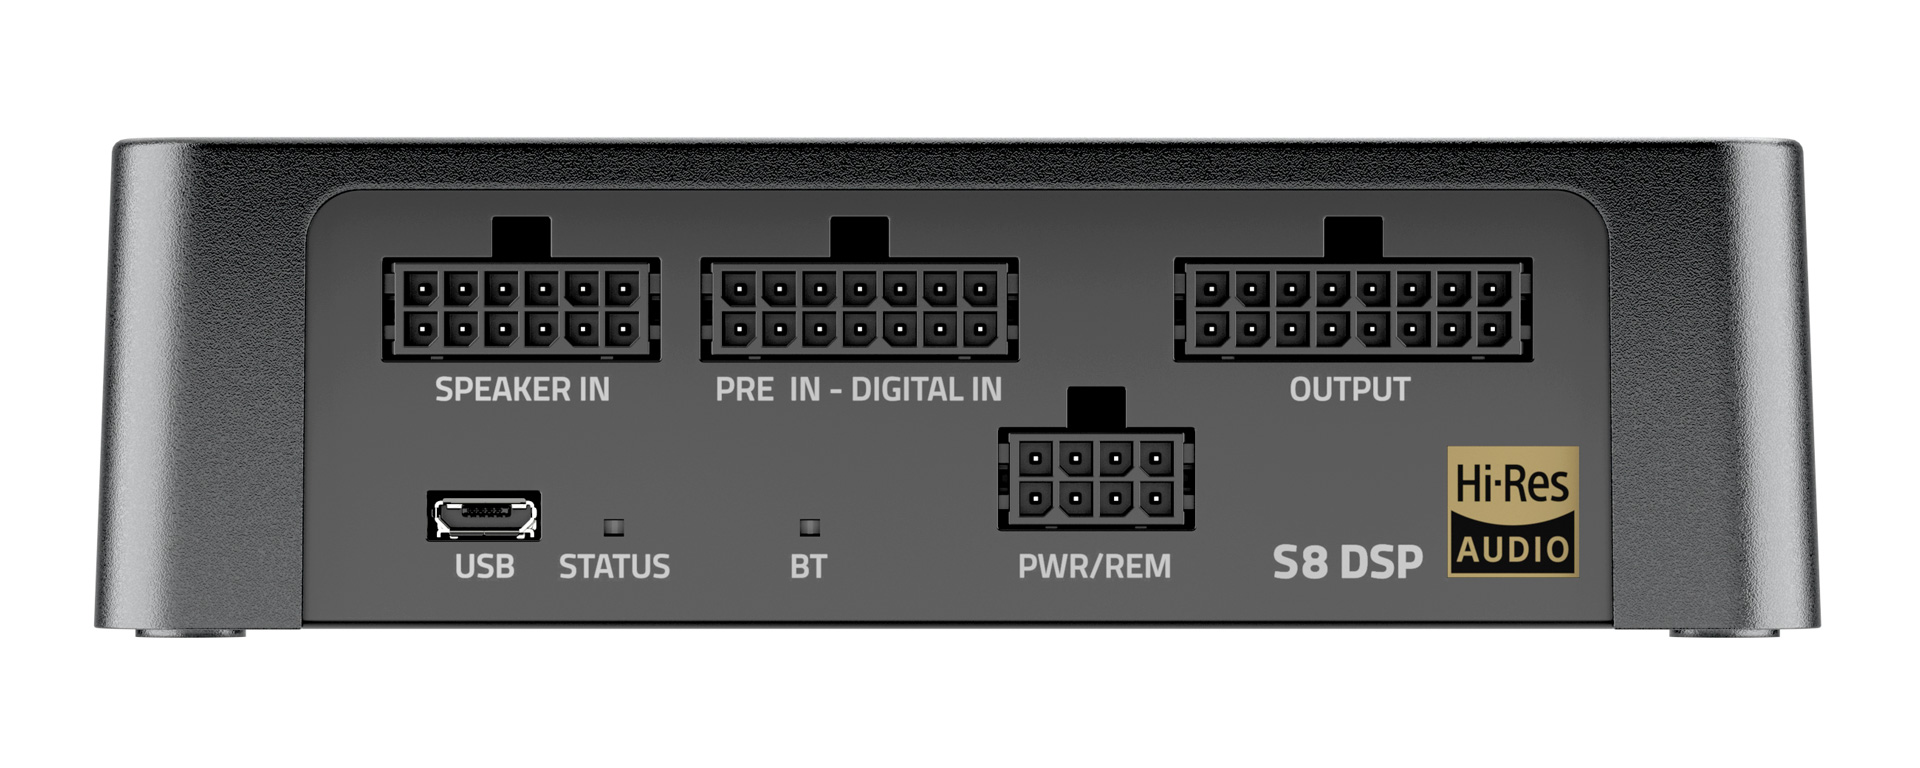 Hertz S8 DSP Ultrakompakt digitális hangprocesszor